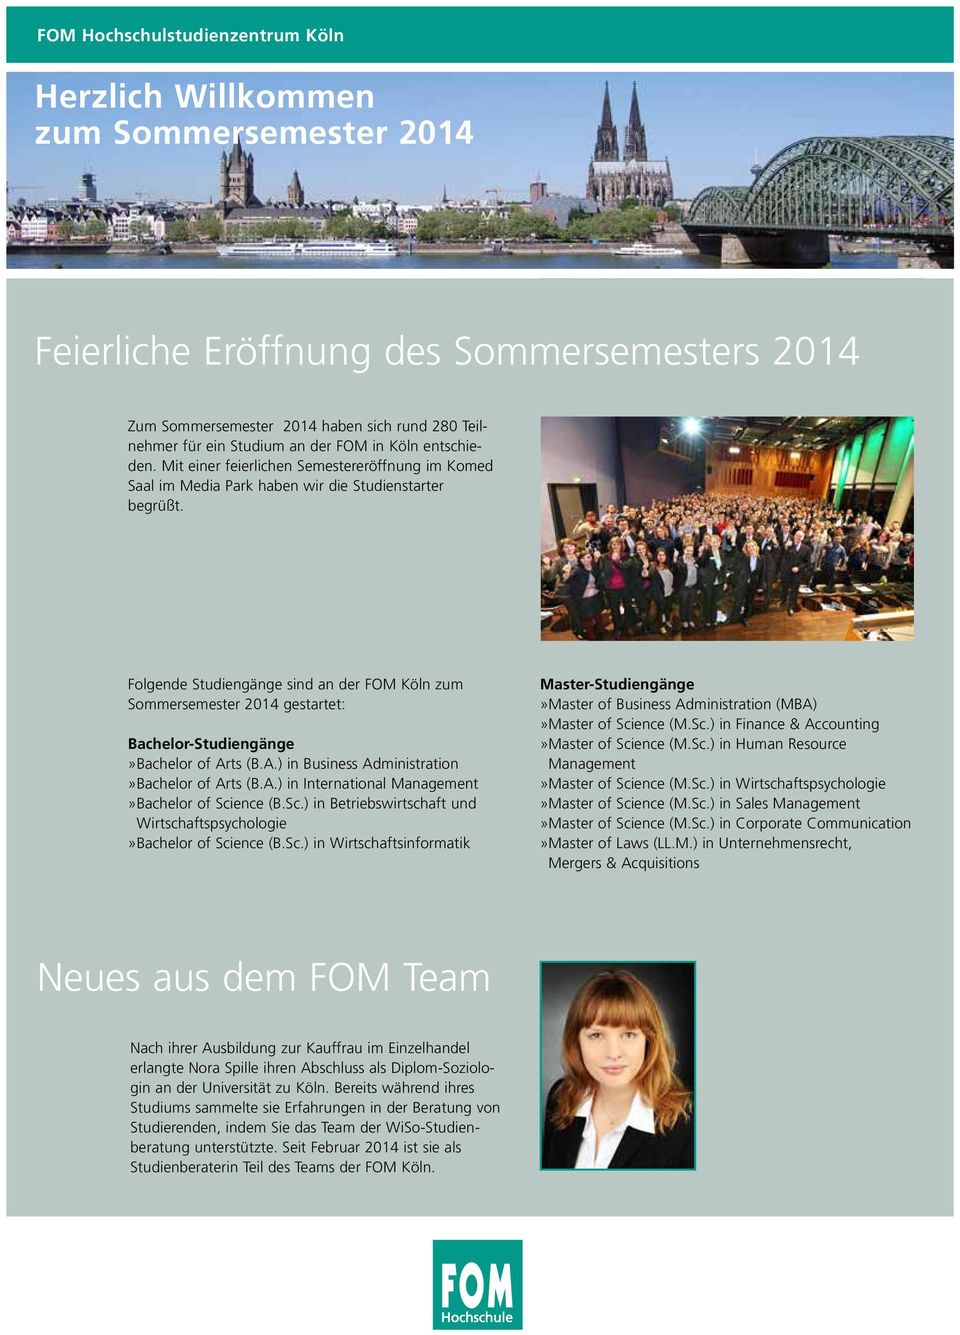 Folgende Studiengänge sind an der FOM Köln zum Sommersemester 2014 gestartet: Bachelor-Studiengänge»Bachelor of Arts (B.A.) in Business Administration»Bachelor of Arts (B.A.) in International Management»Bachelor of Science (B.